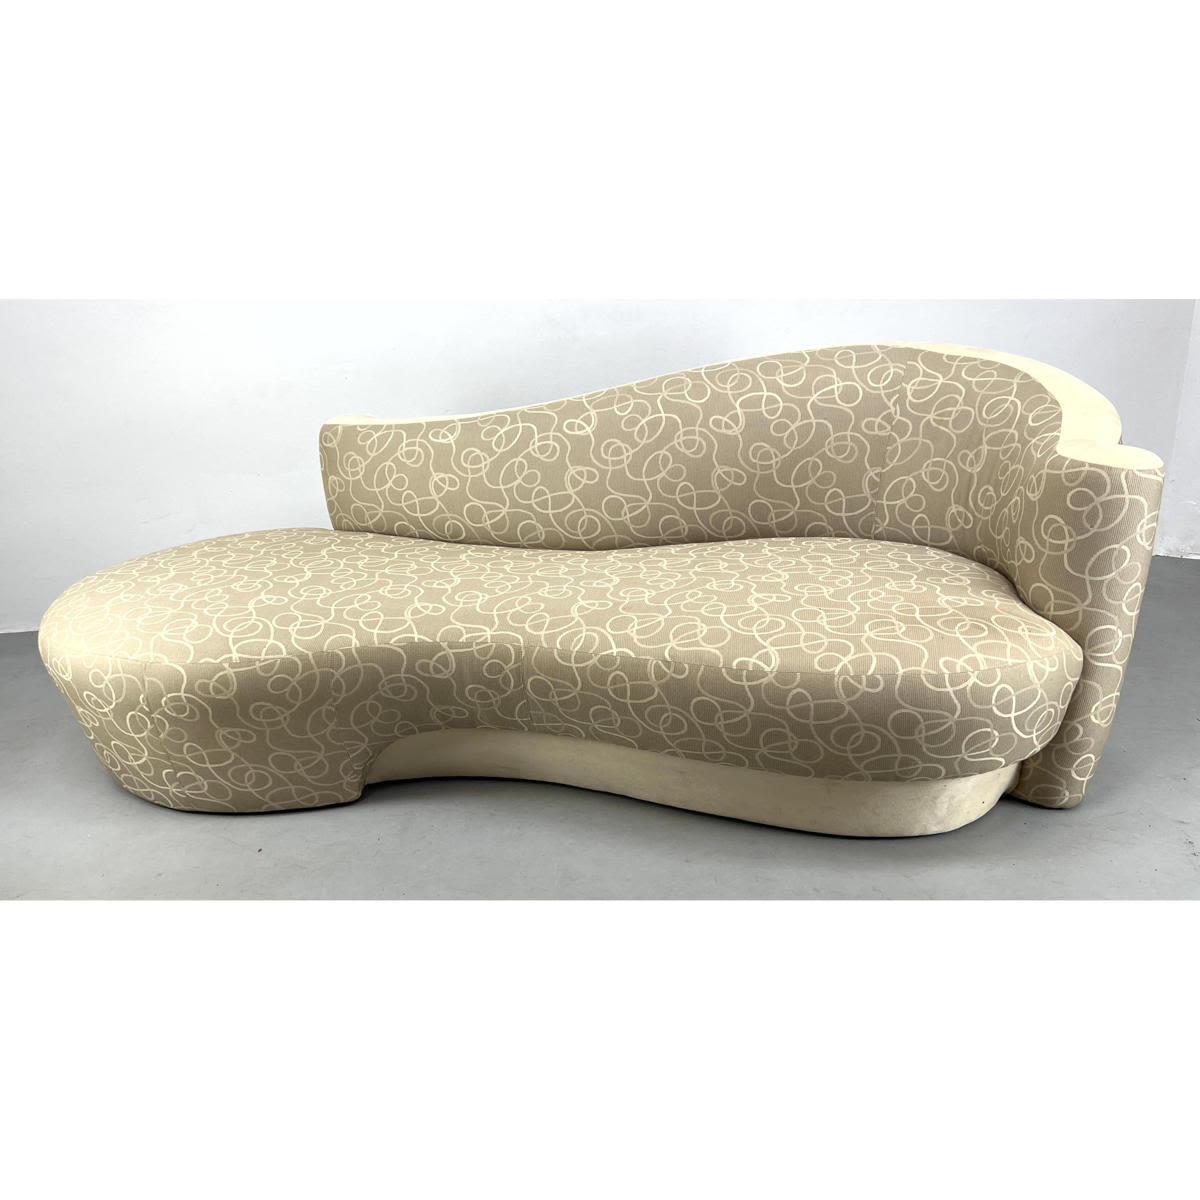 Weiman Kagan style serpentine sofa couch.